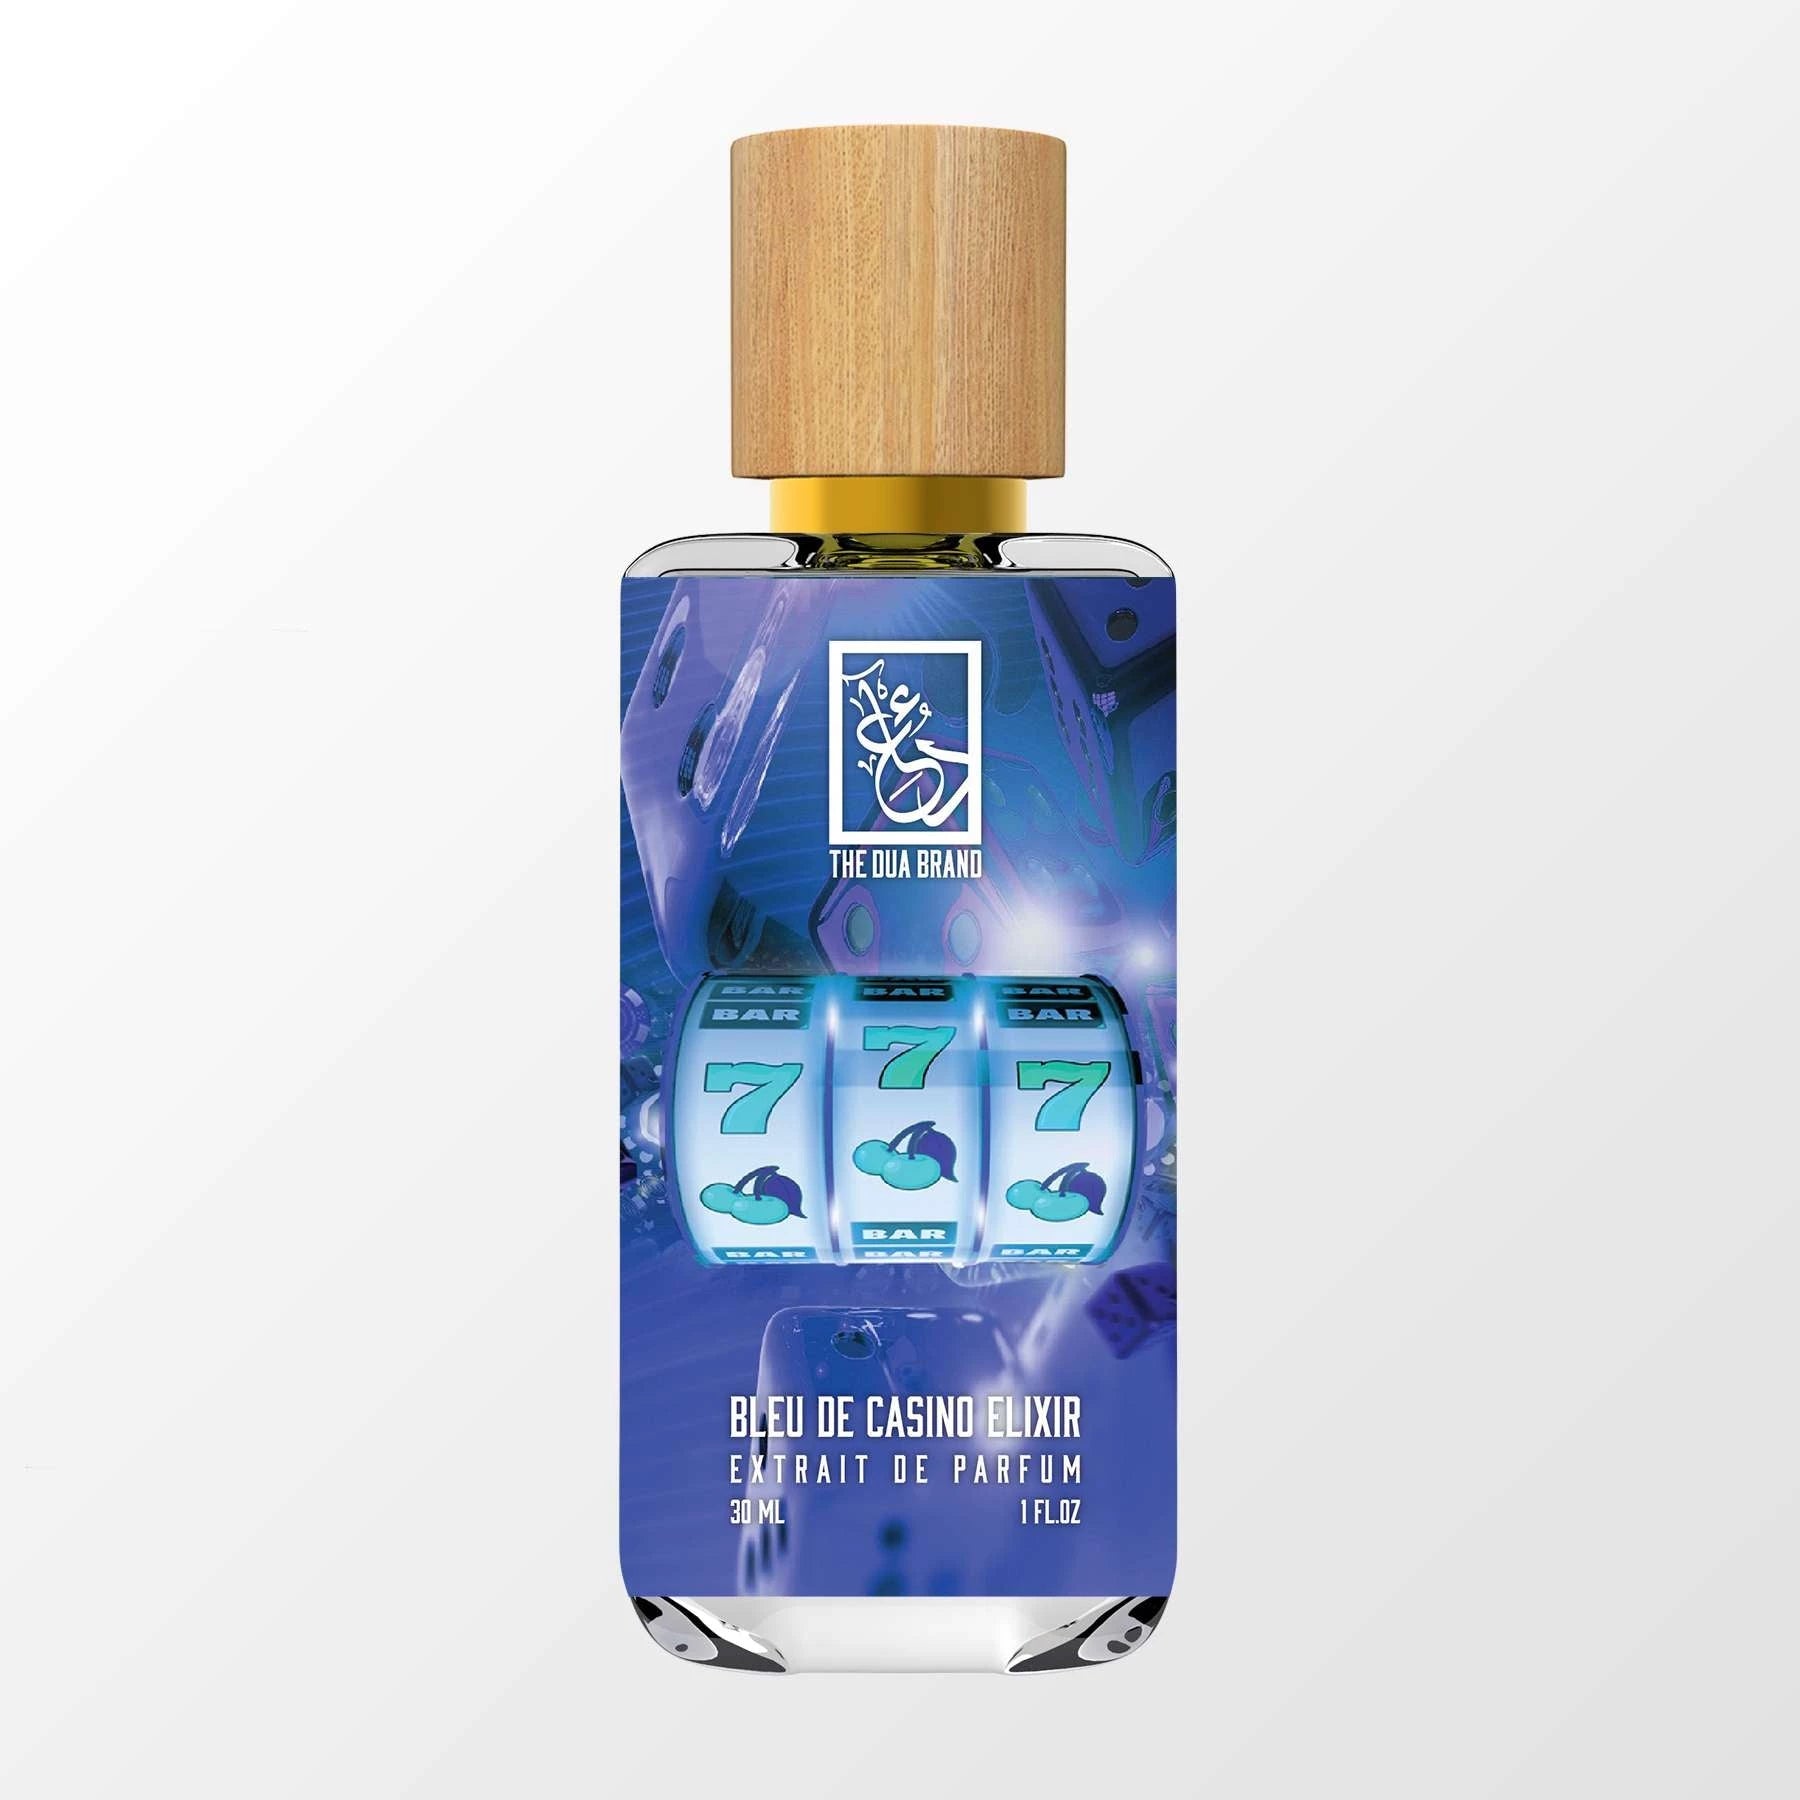 bleu de chanel parfum women's 3.4